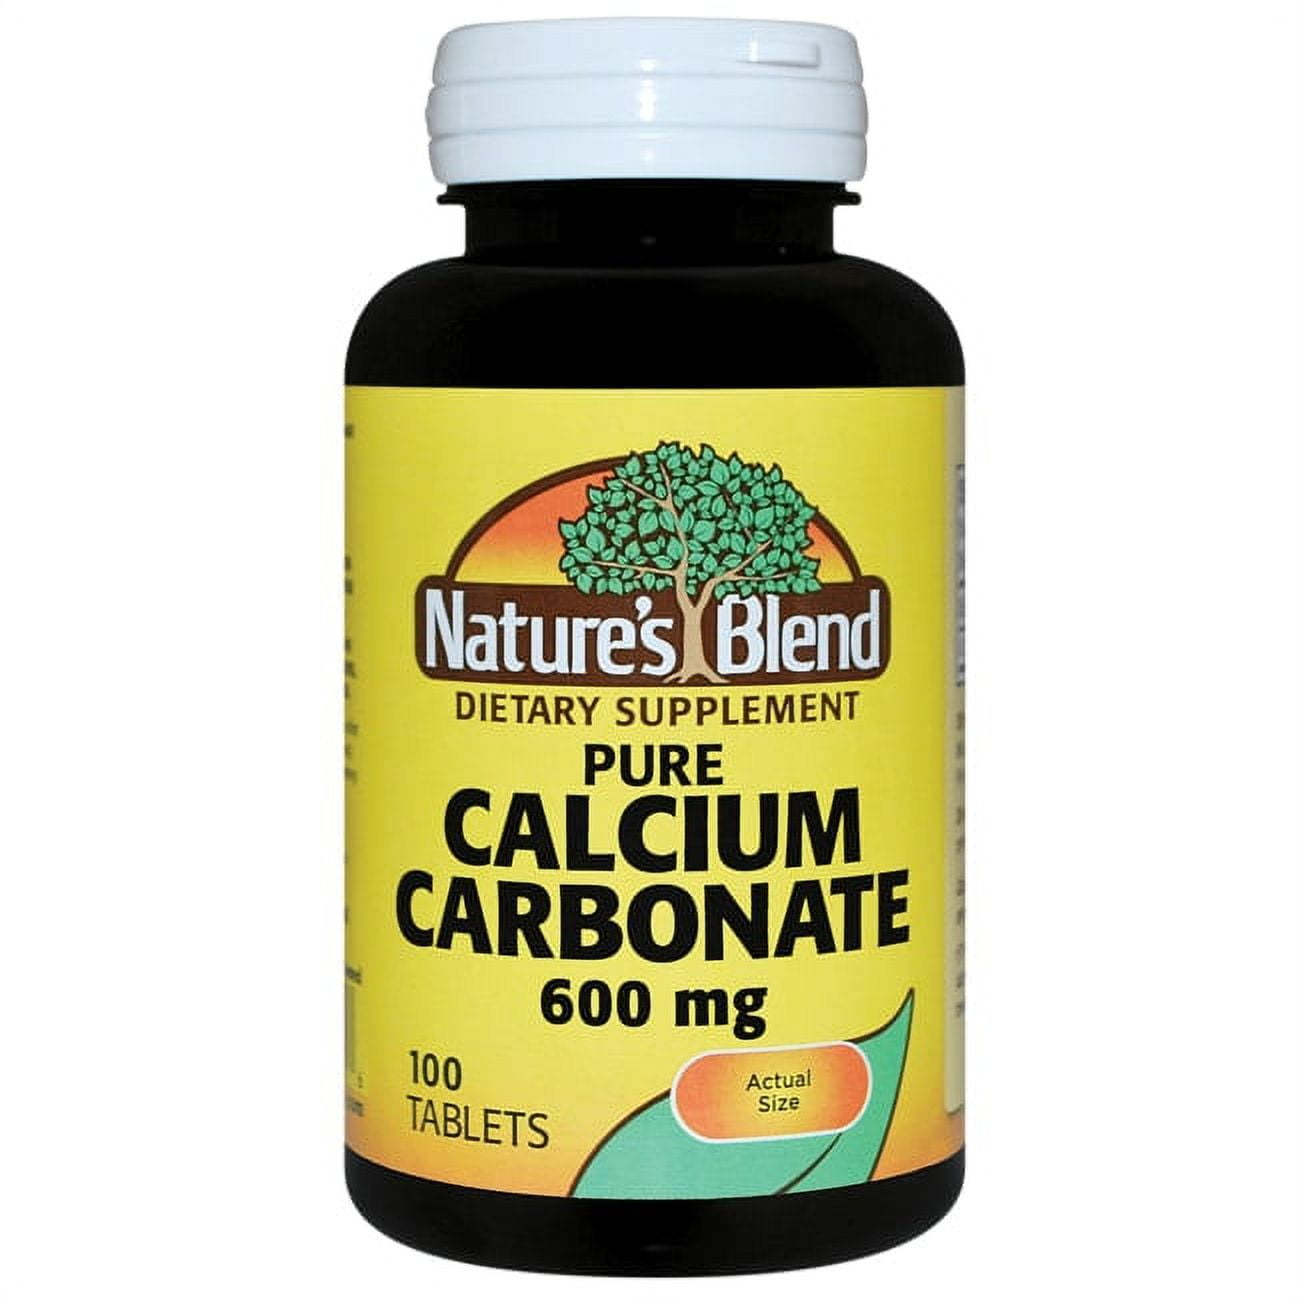 NOW Calcium Carbonate Pure Powder, 12 oz - Foods Co.